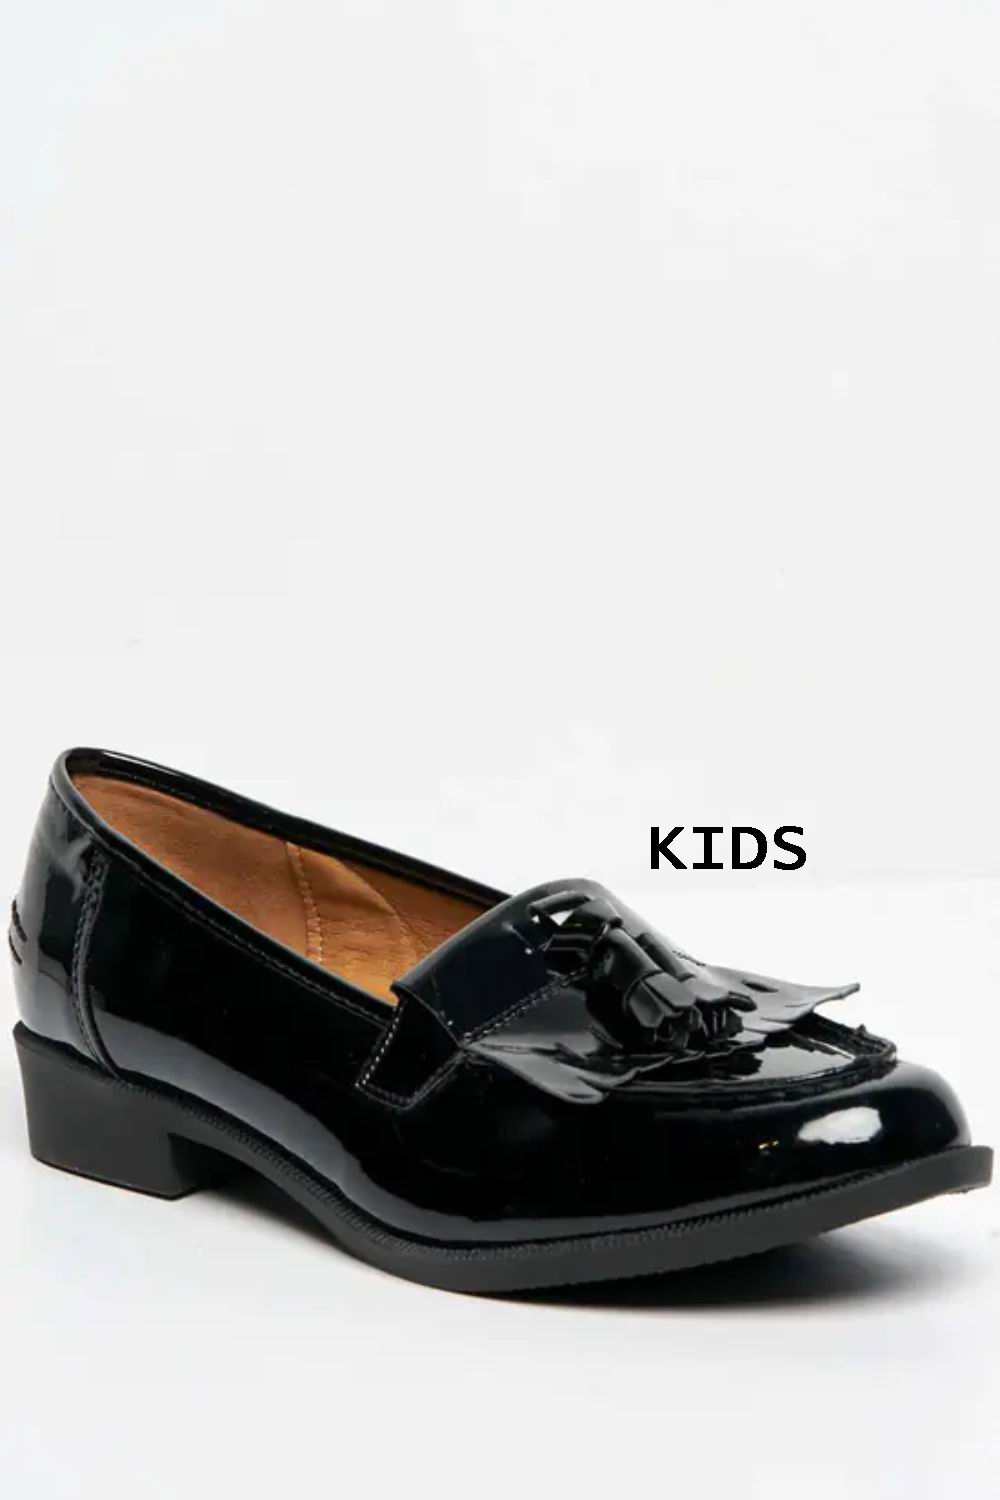 Kids Black Patent Slip On Flatform Loafer Shoes With Tassle